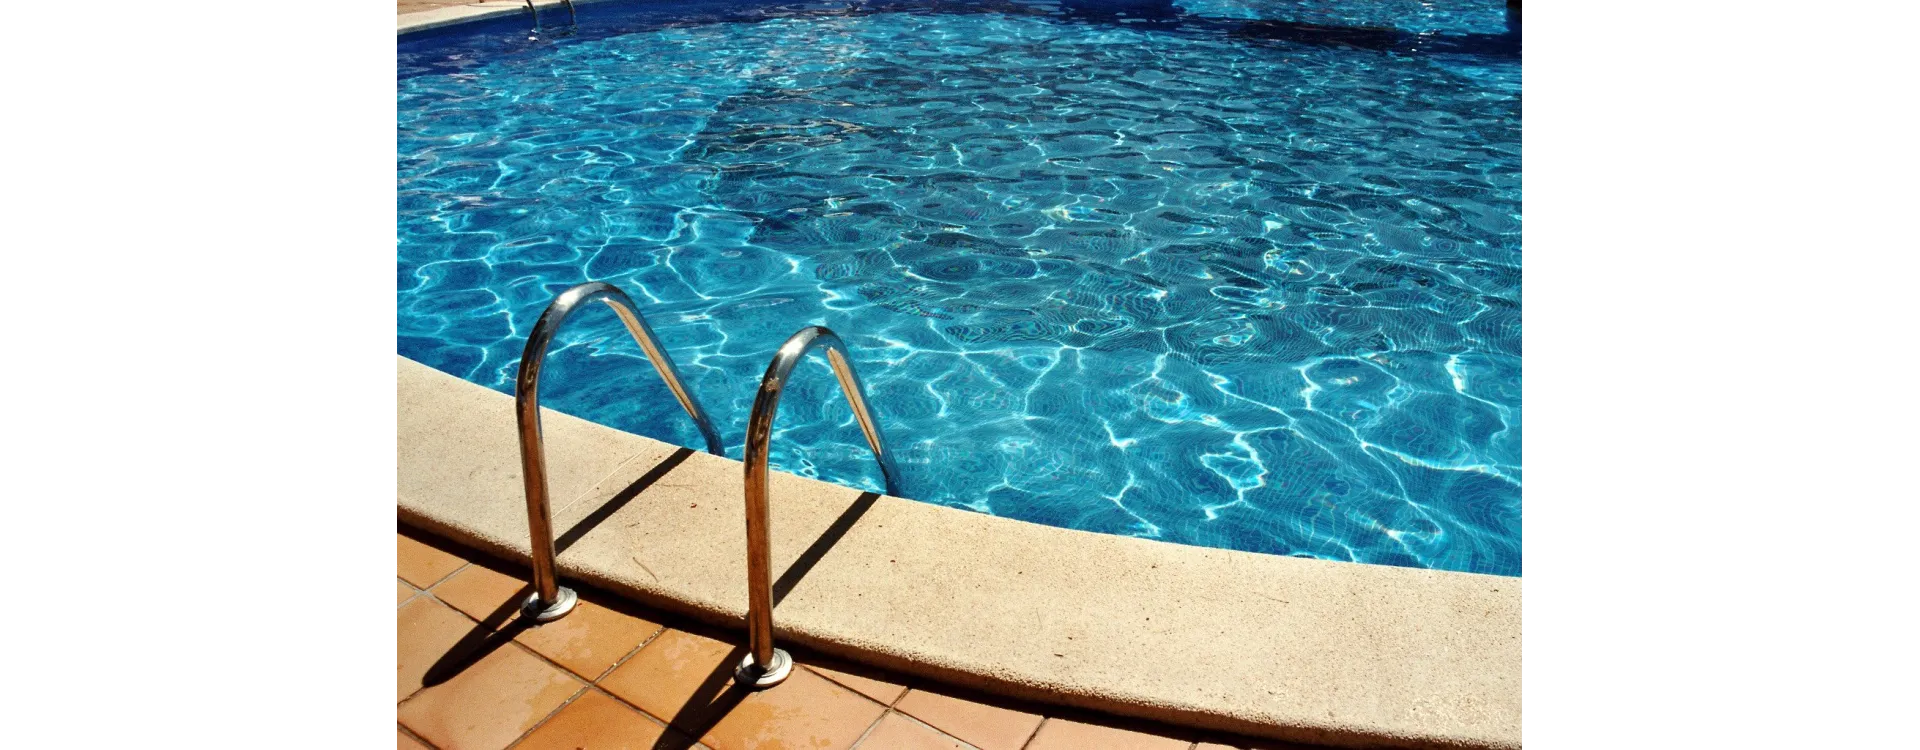 Cómo preparar tu piscina para el verano